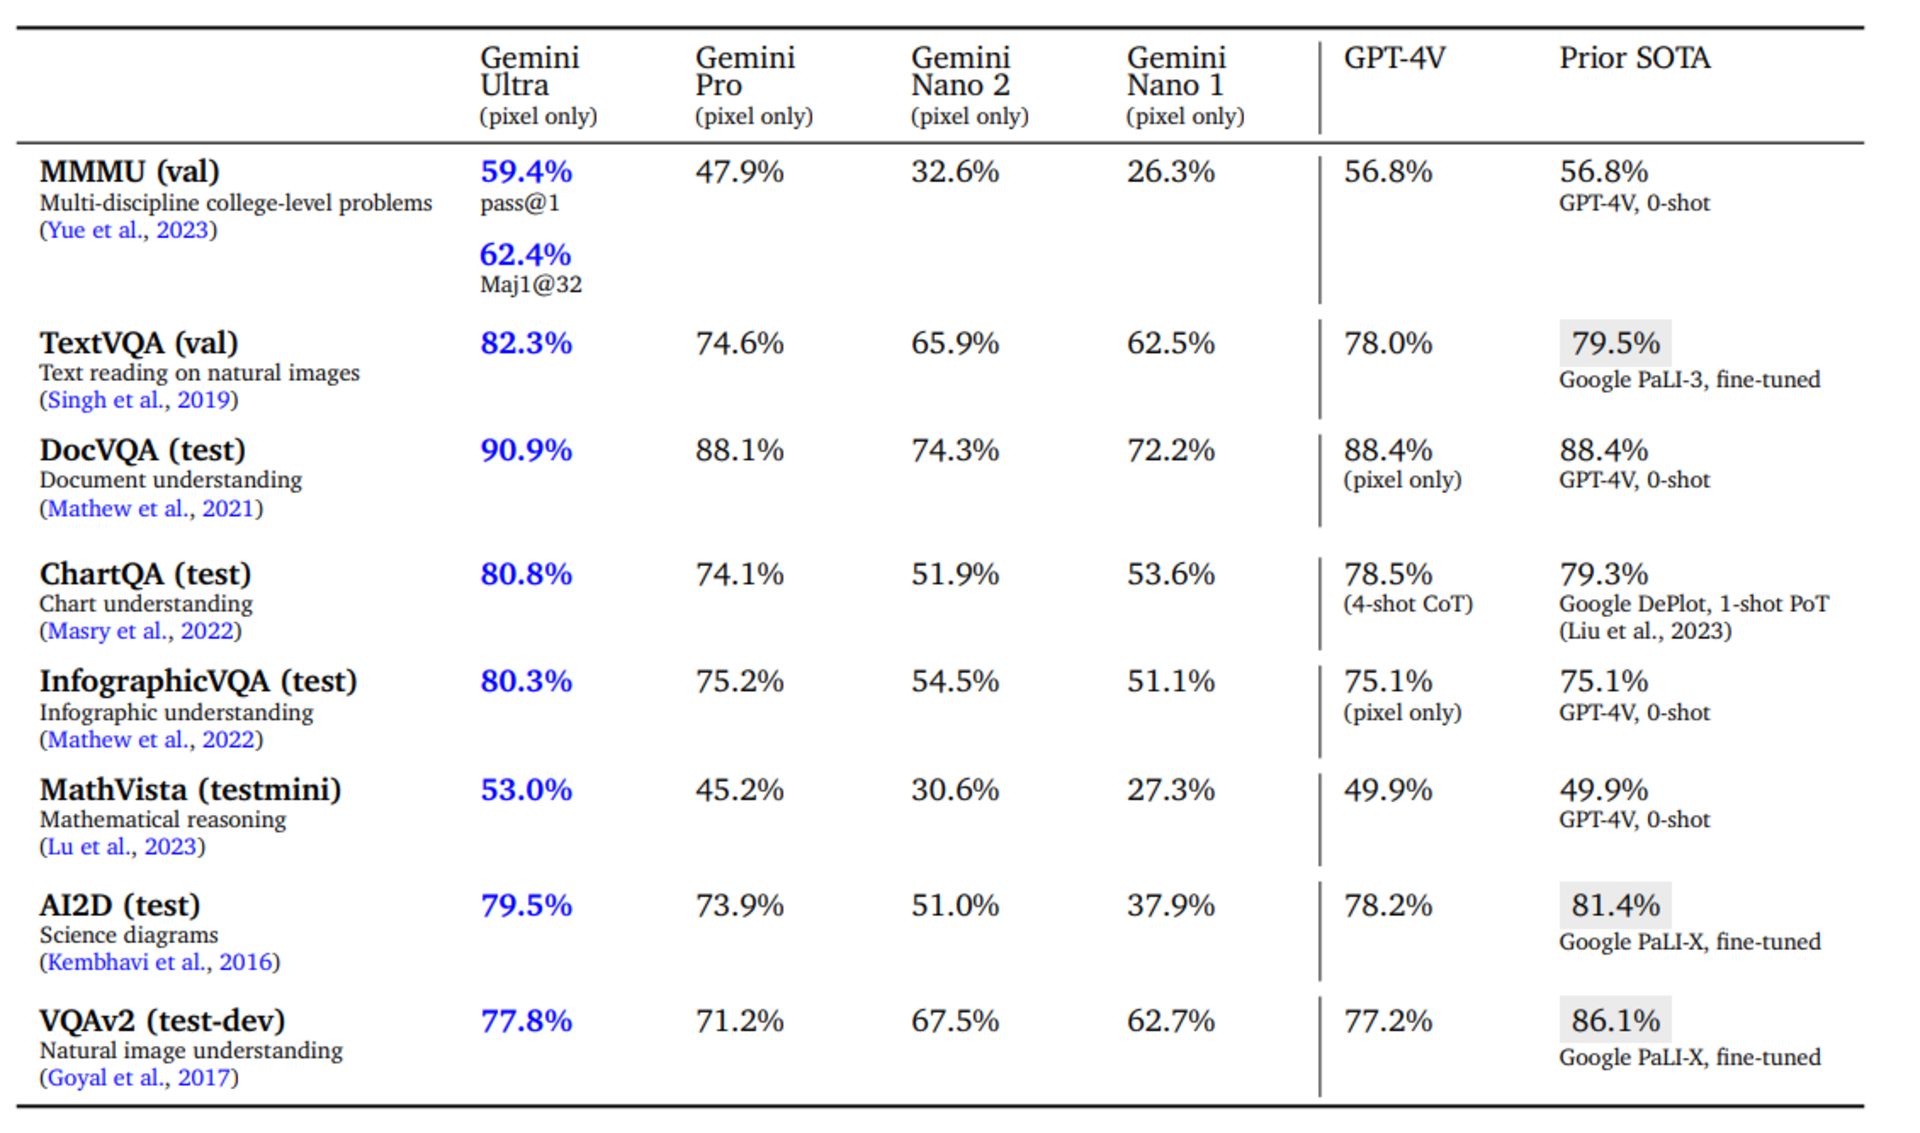 جدول مقایسه امتیازهای جمنای اولترا گوگل دربرابر GPT-4